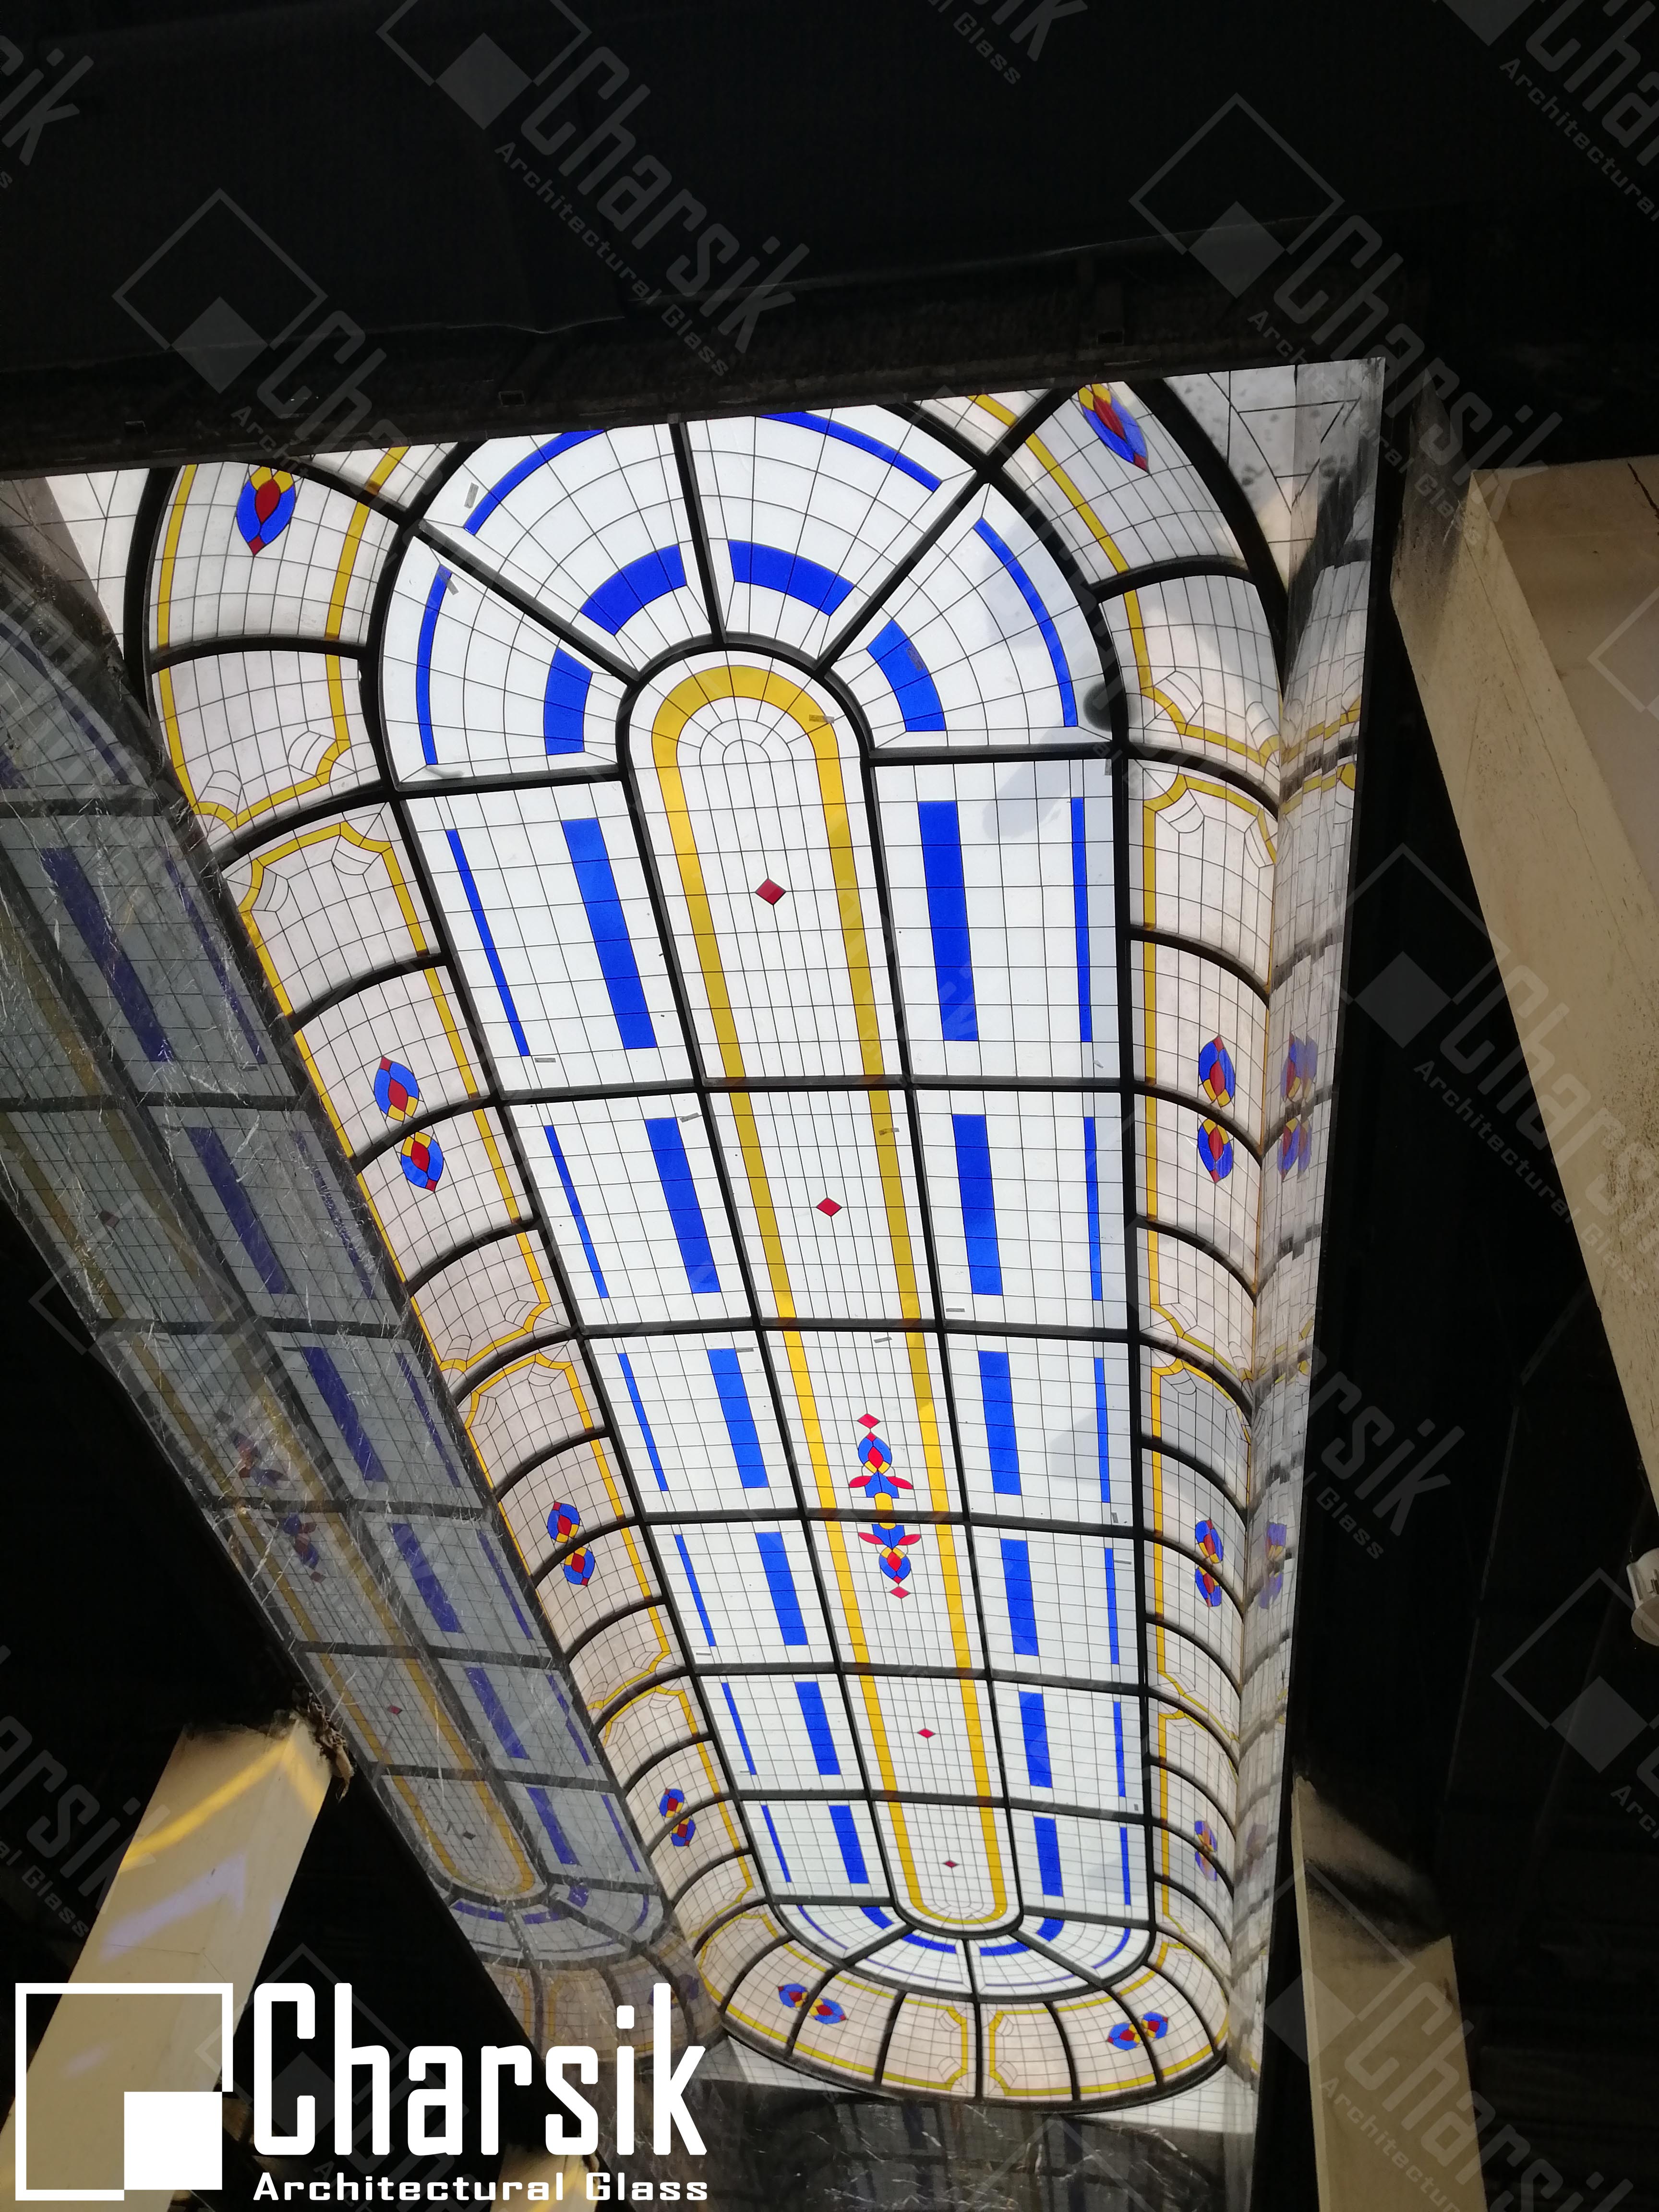 طراحی و ساخت بزرگترین سقف شیشه ای ترکیبی استیند گلس در خاورمیانه